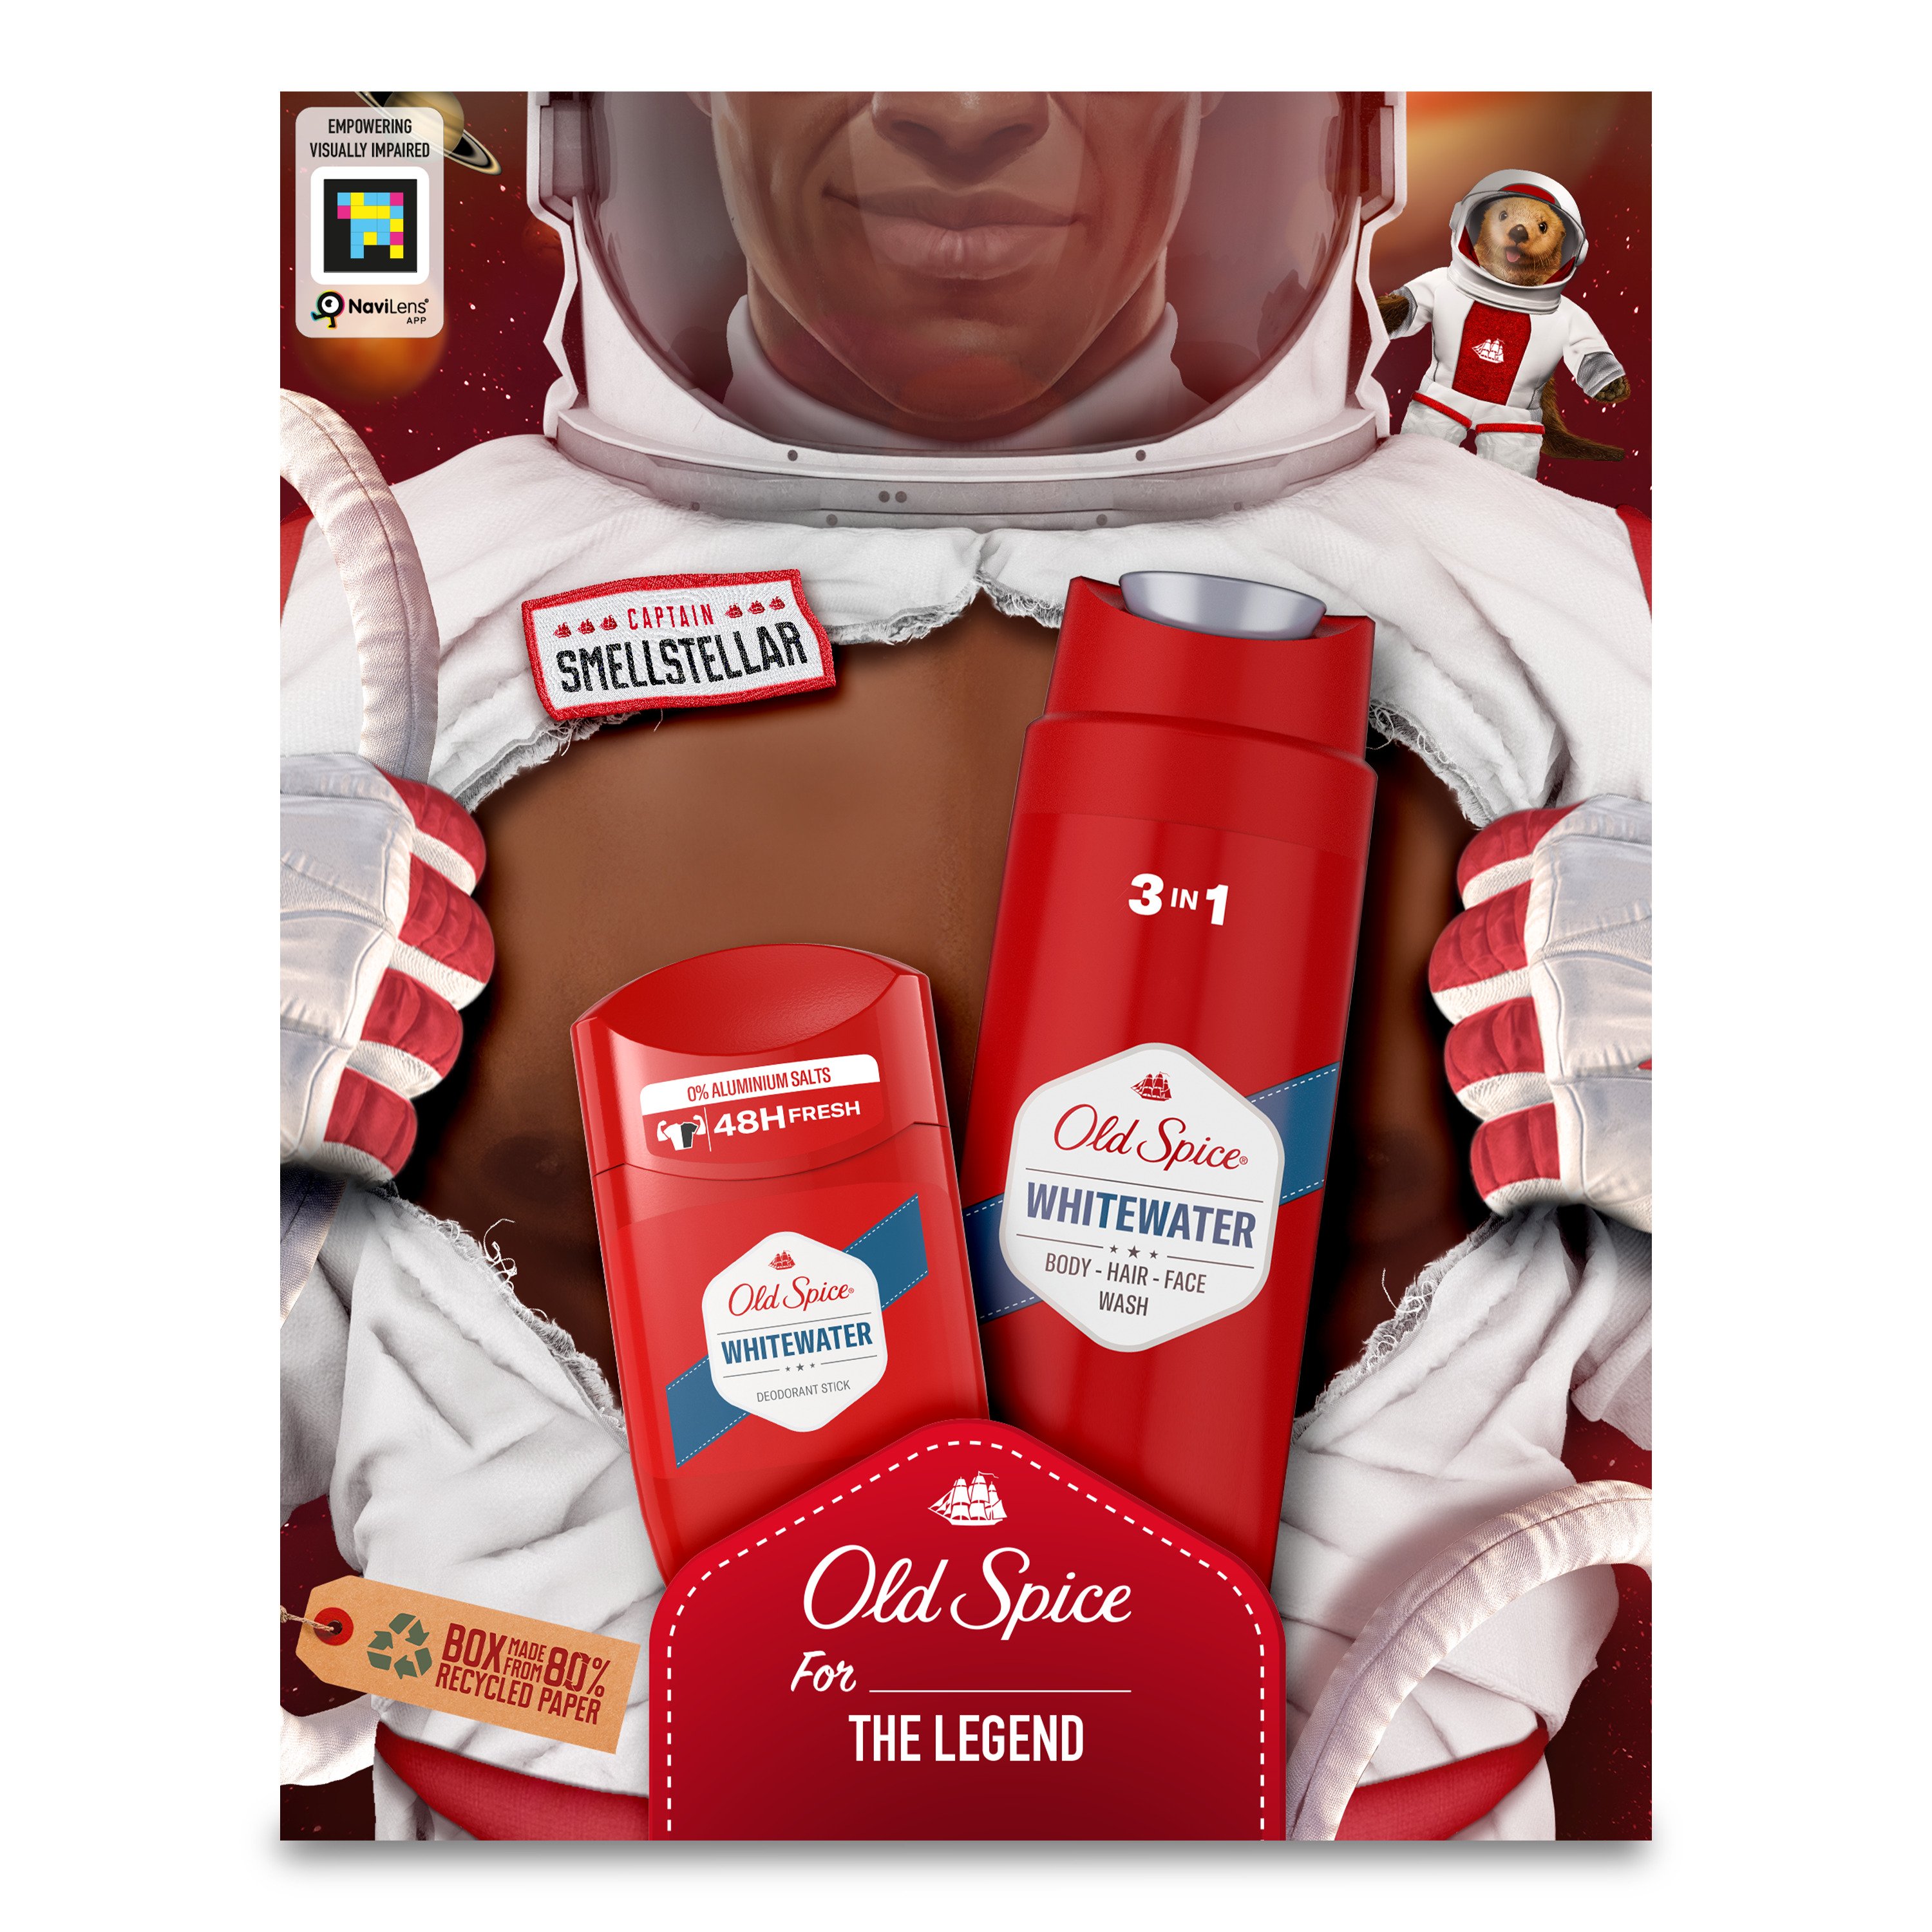 Подарунковий набір для чоловіків Old Spice Astronaut WhiteWater: твердий дезодорант 50 мл + гель для душу 3 в 1 250 мл - фото 2